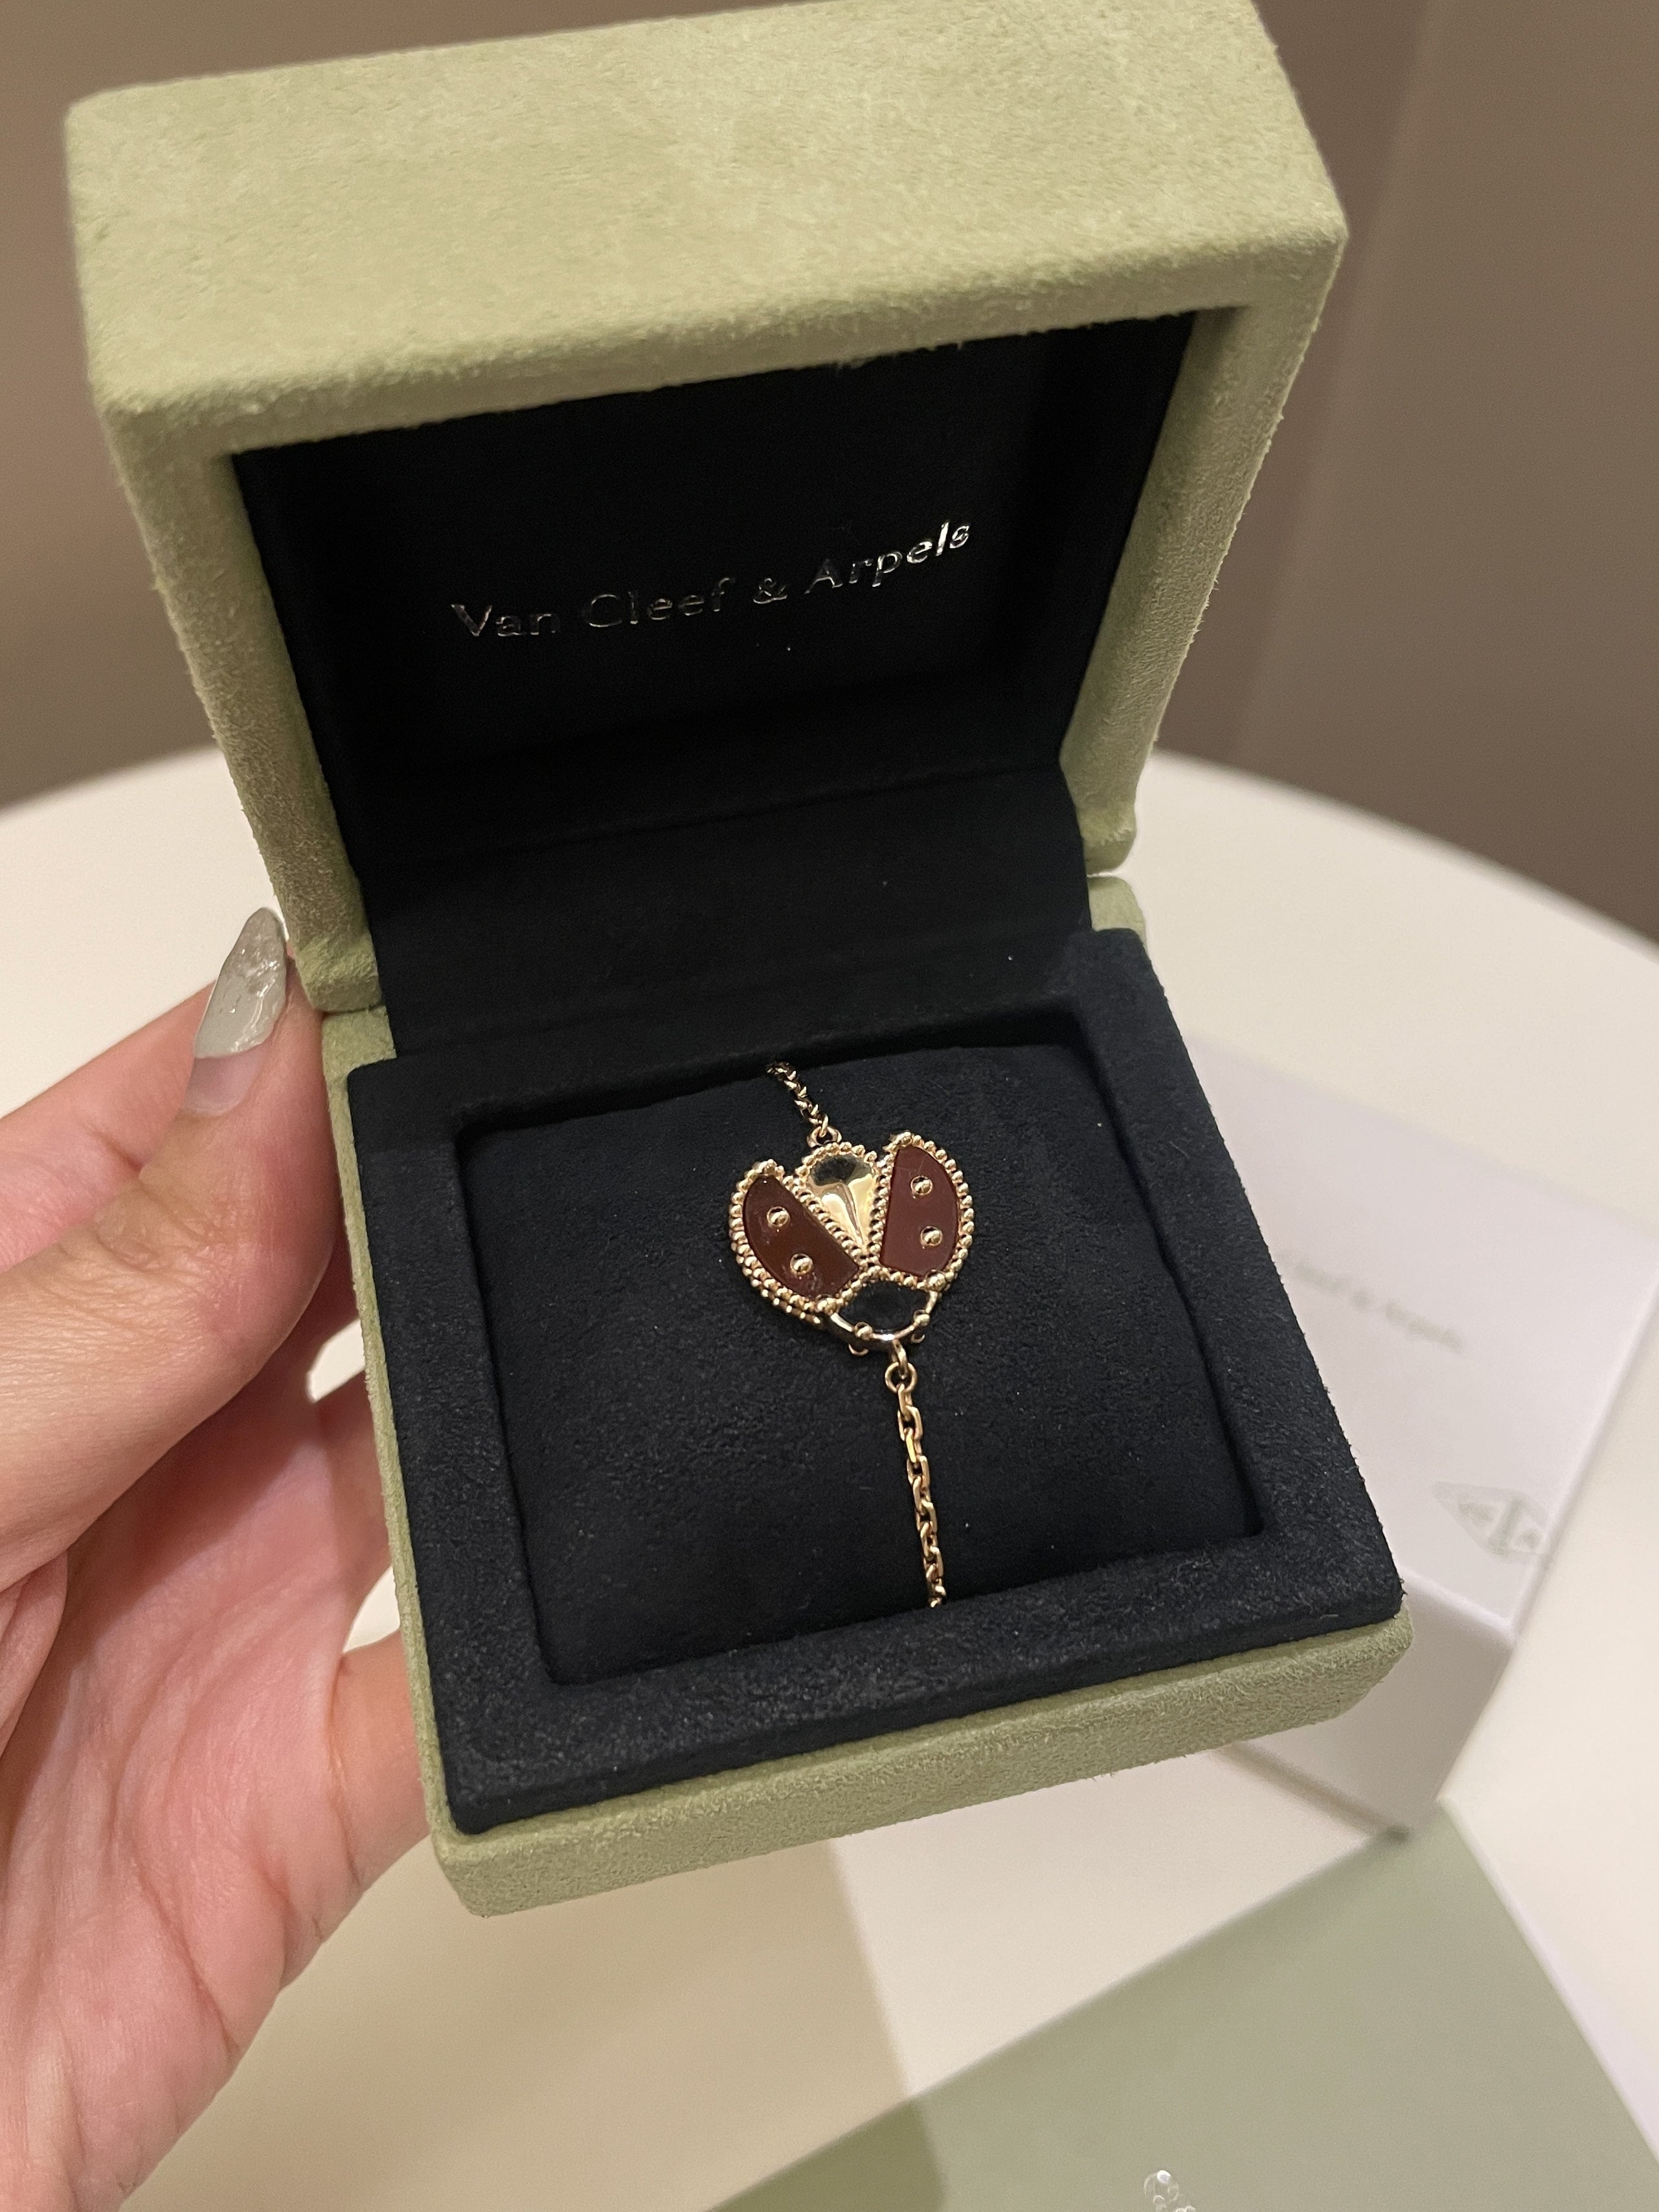 Van Cleef & Arpels Lucky Spring Ladybug Bracelet 
18K Rose Gold